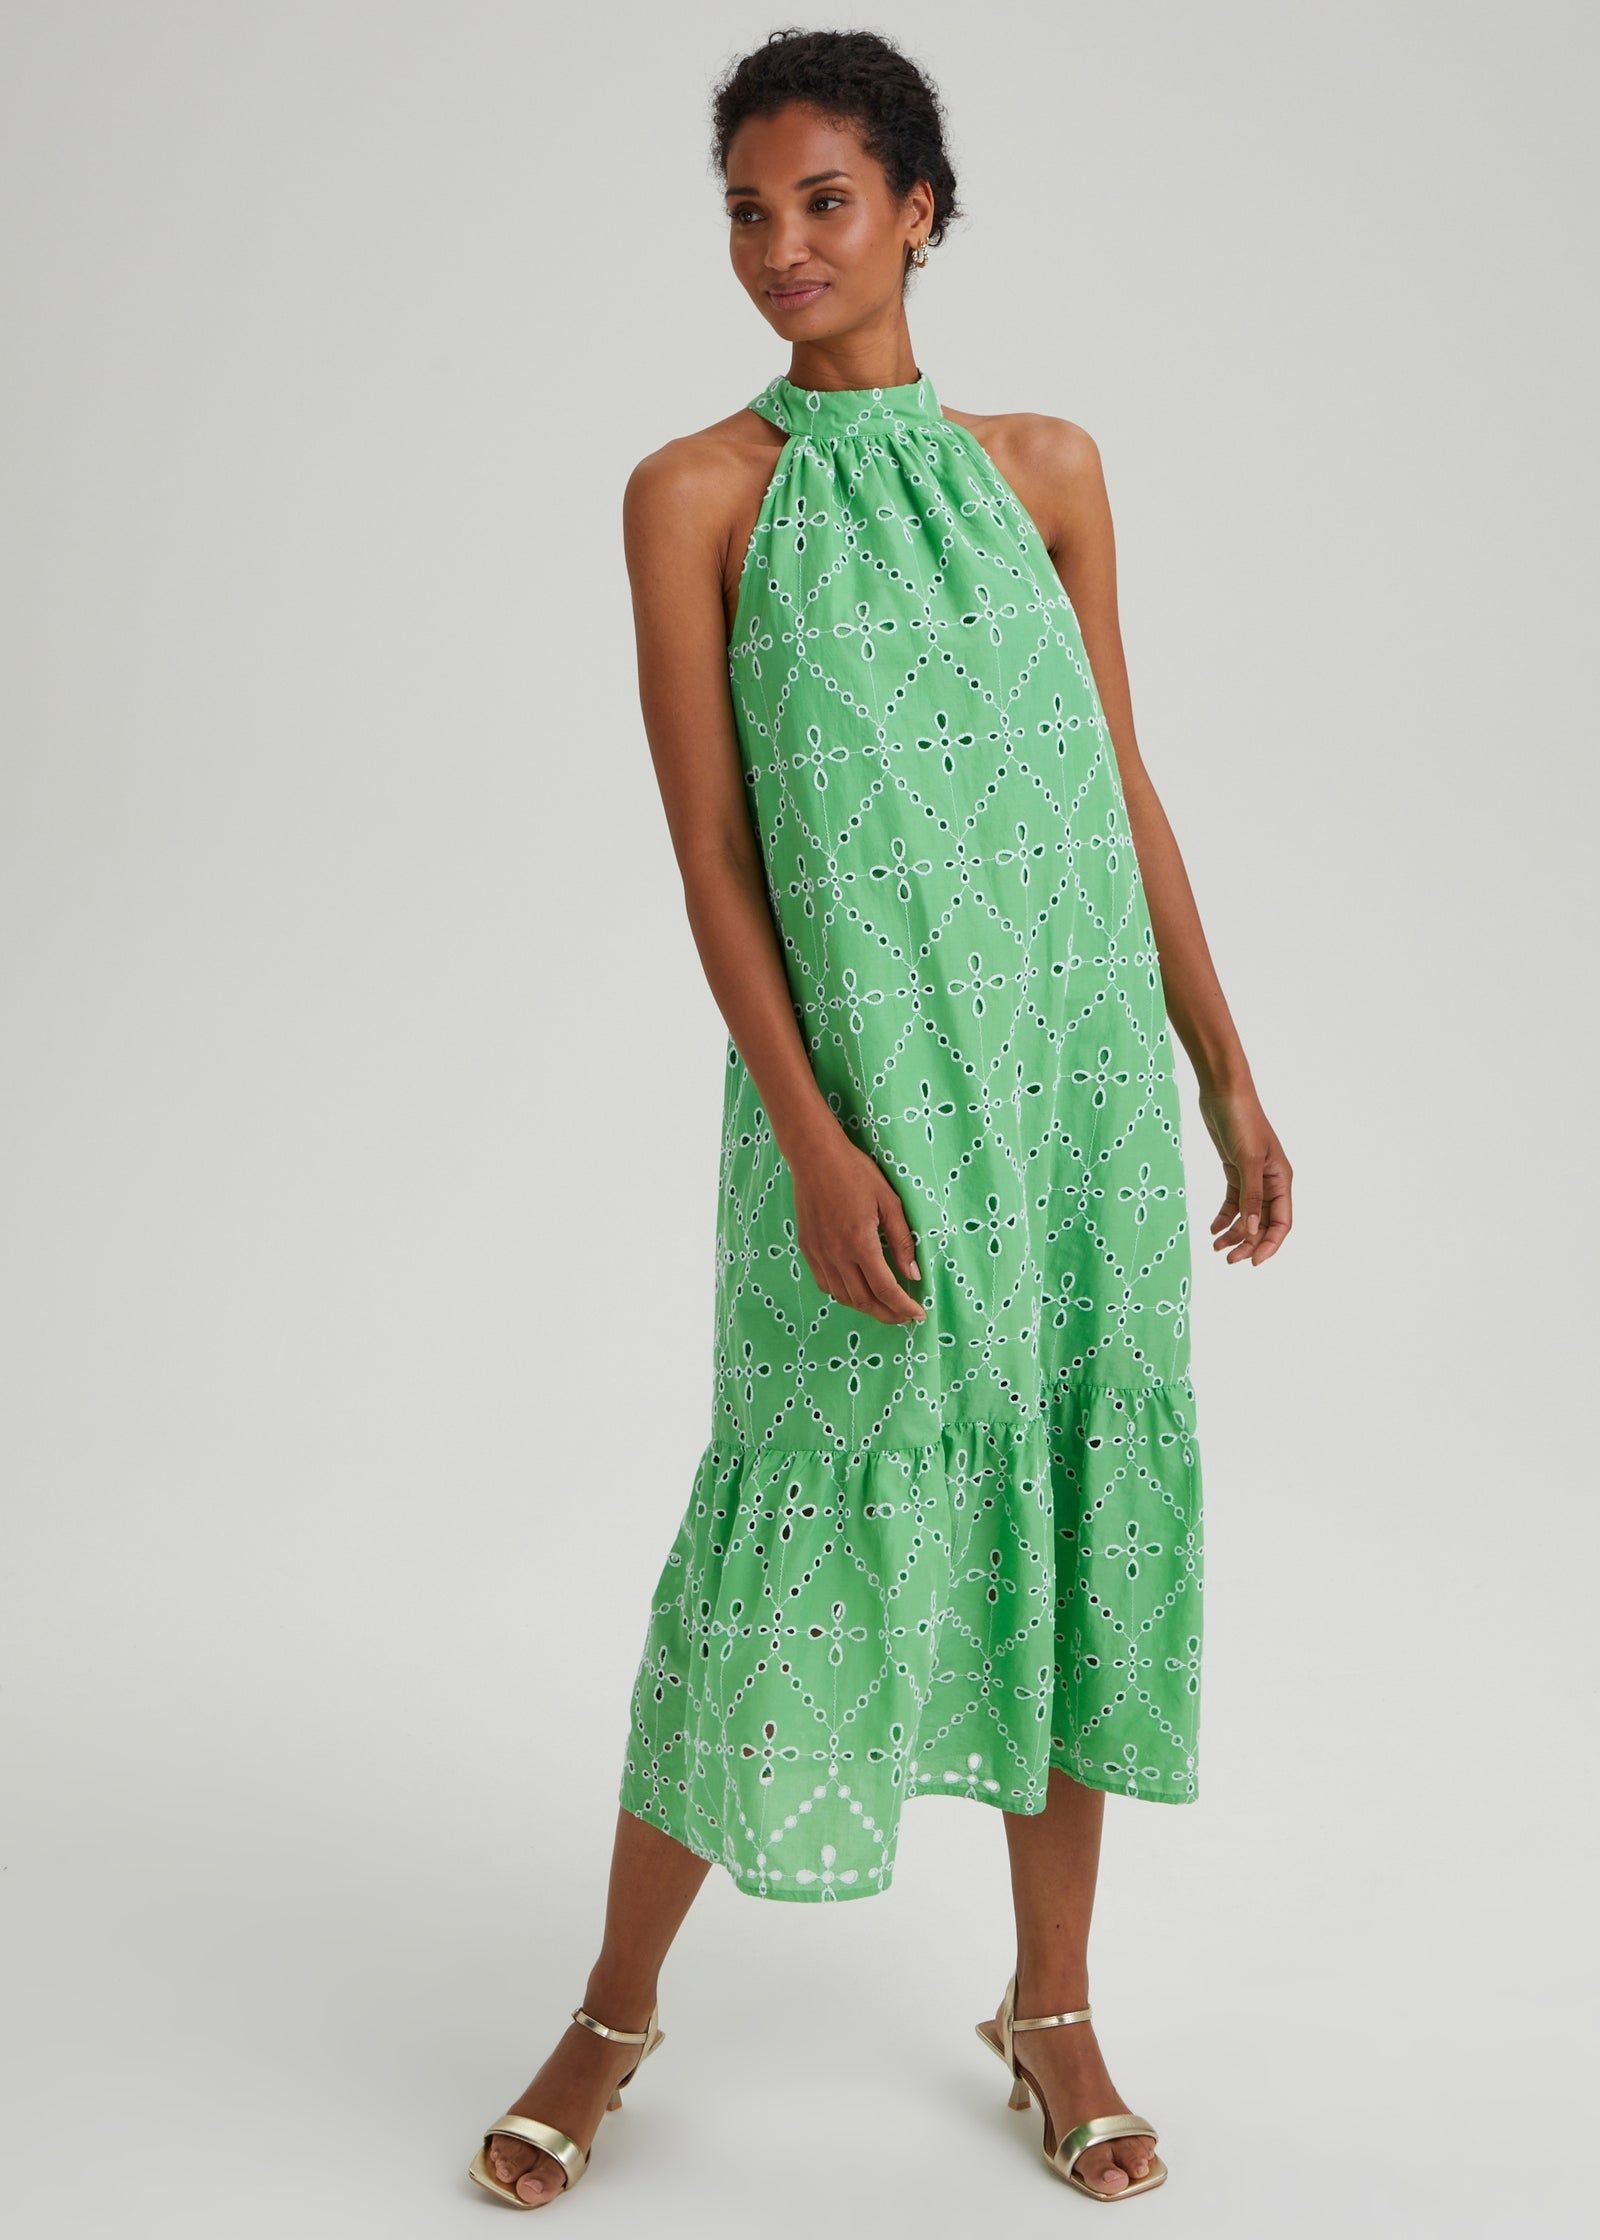 Et Vous Green Sequin Dress - Matalan